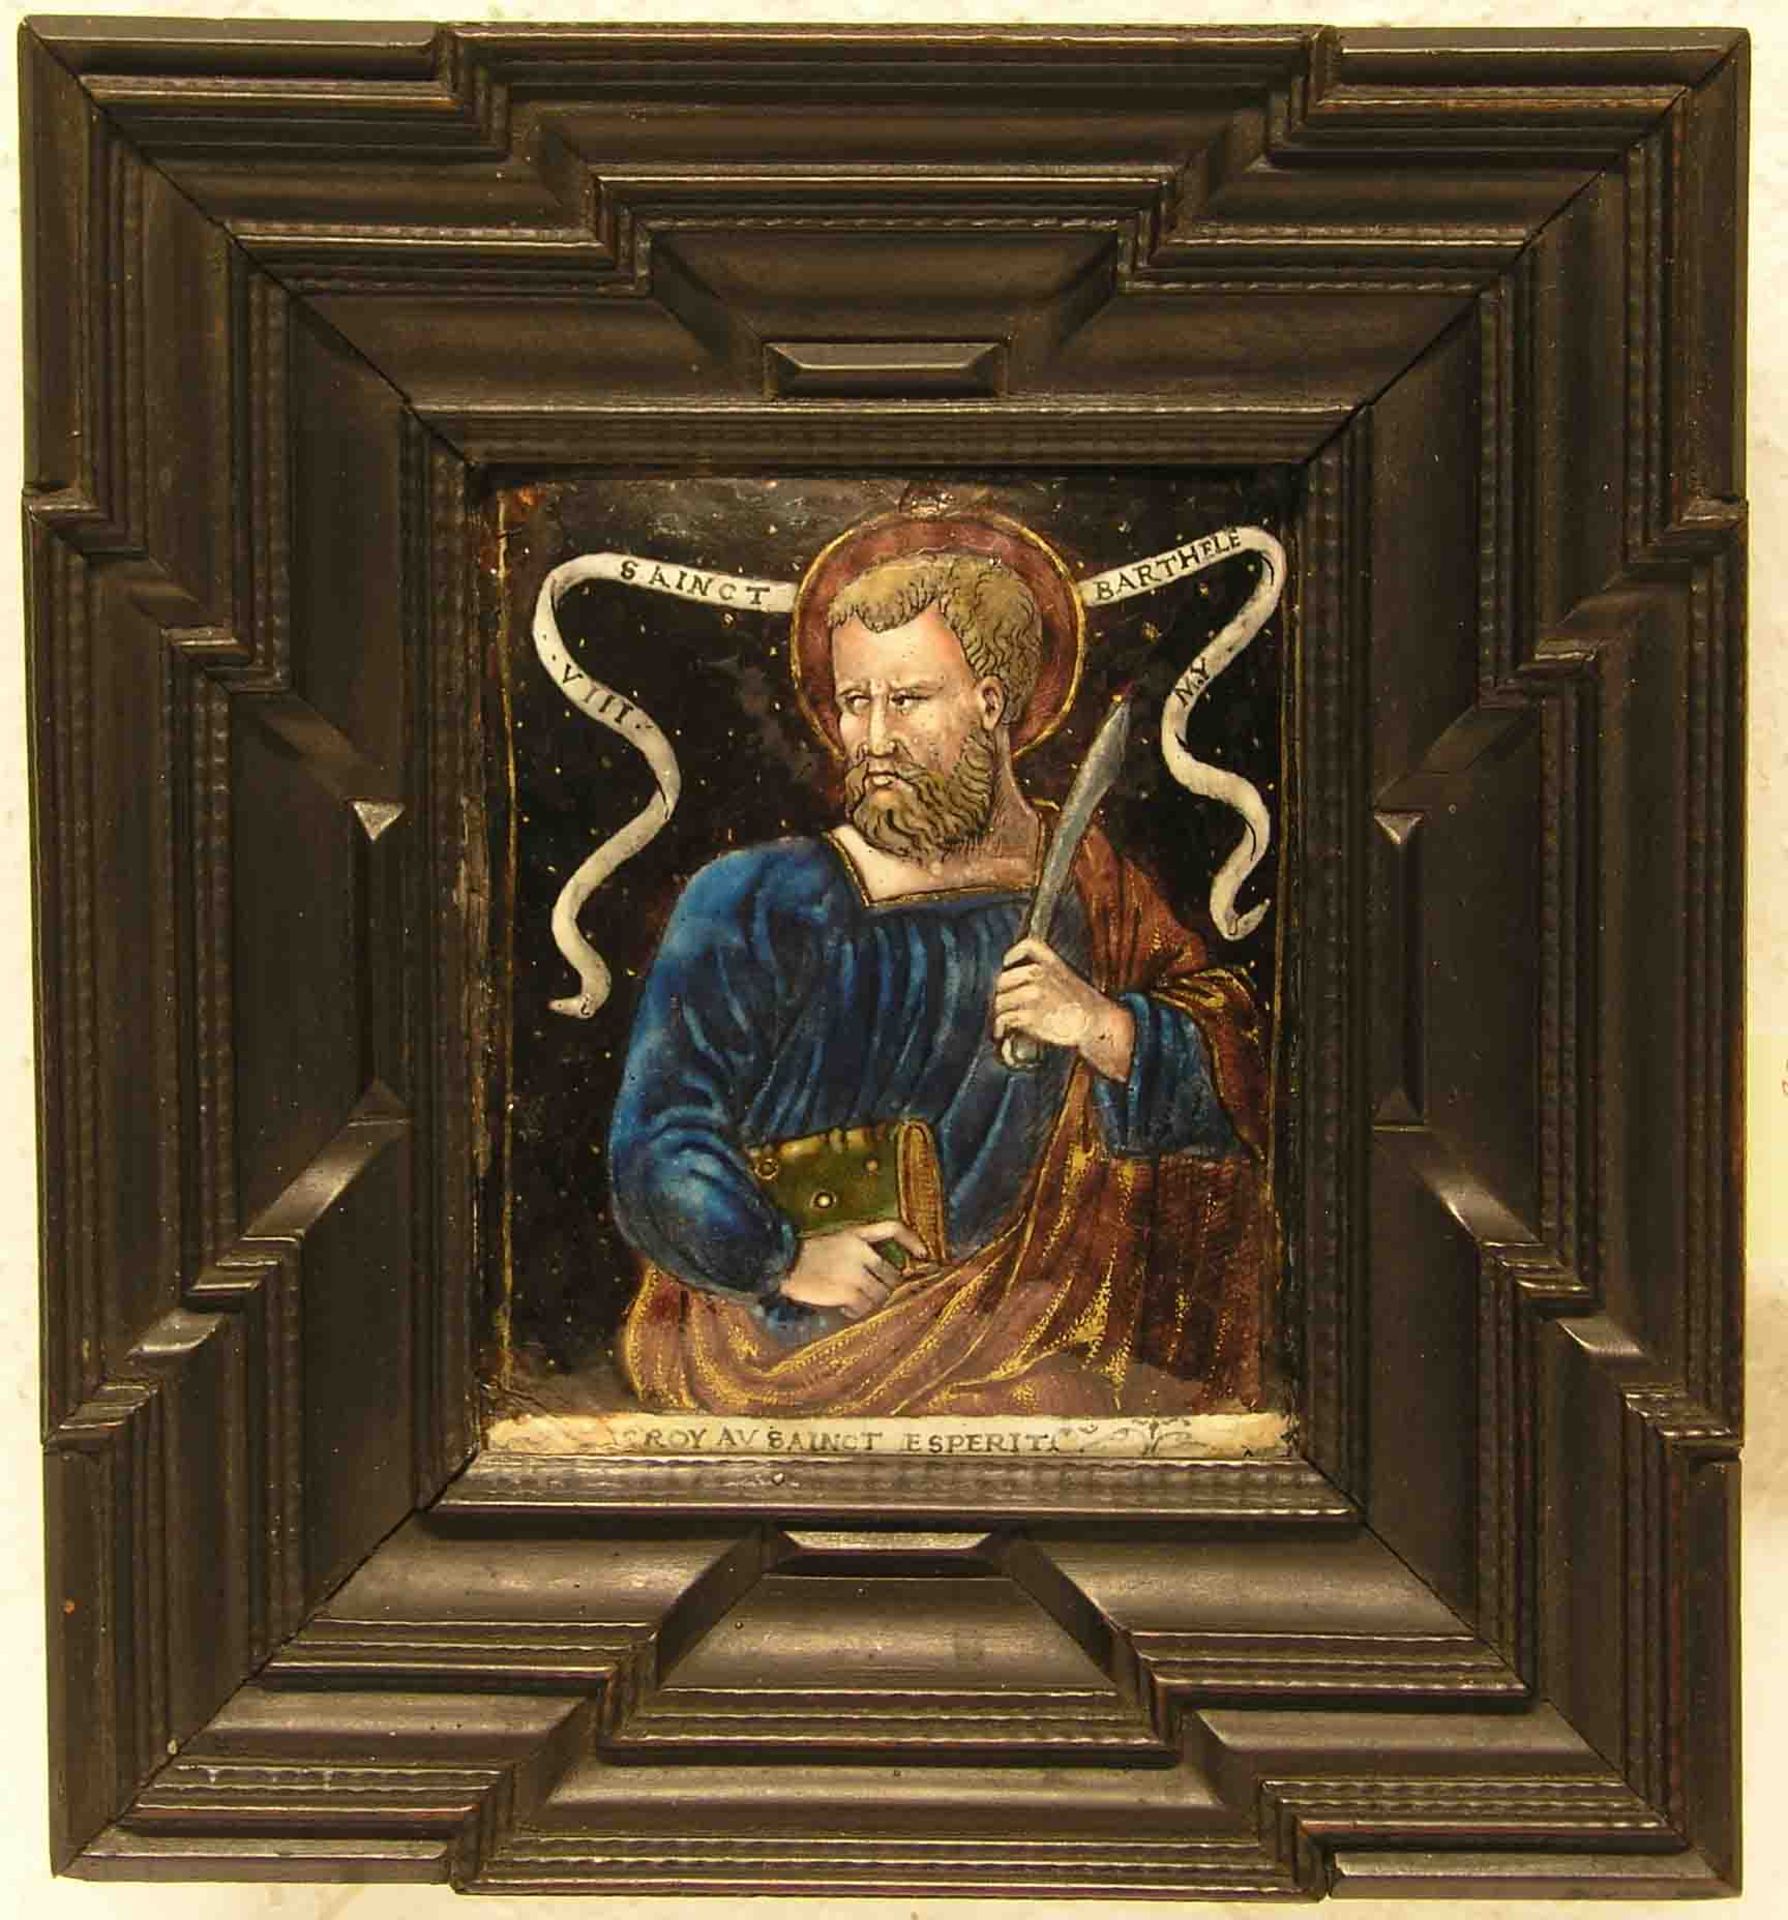 Hl. Bartholomäus. Emailtafel von 1580, Limoges. Polychrone Malerei, z.T. mit Gold.Spruchband "Croy